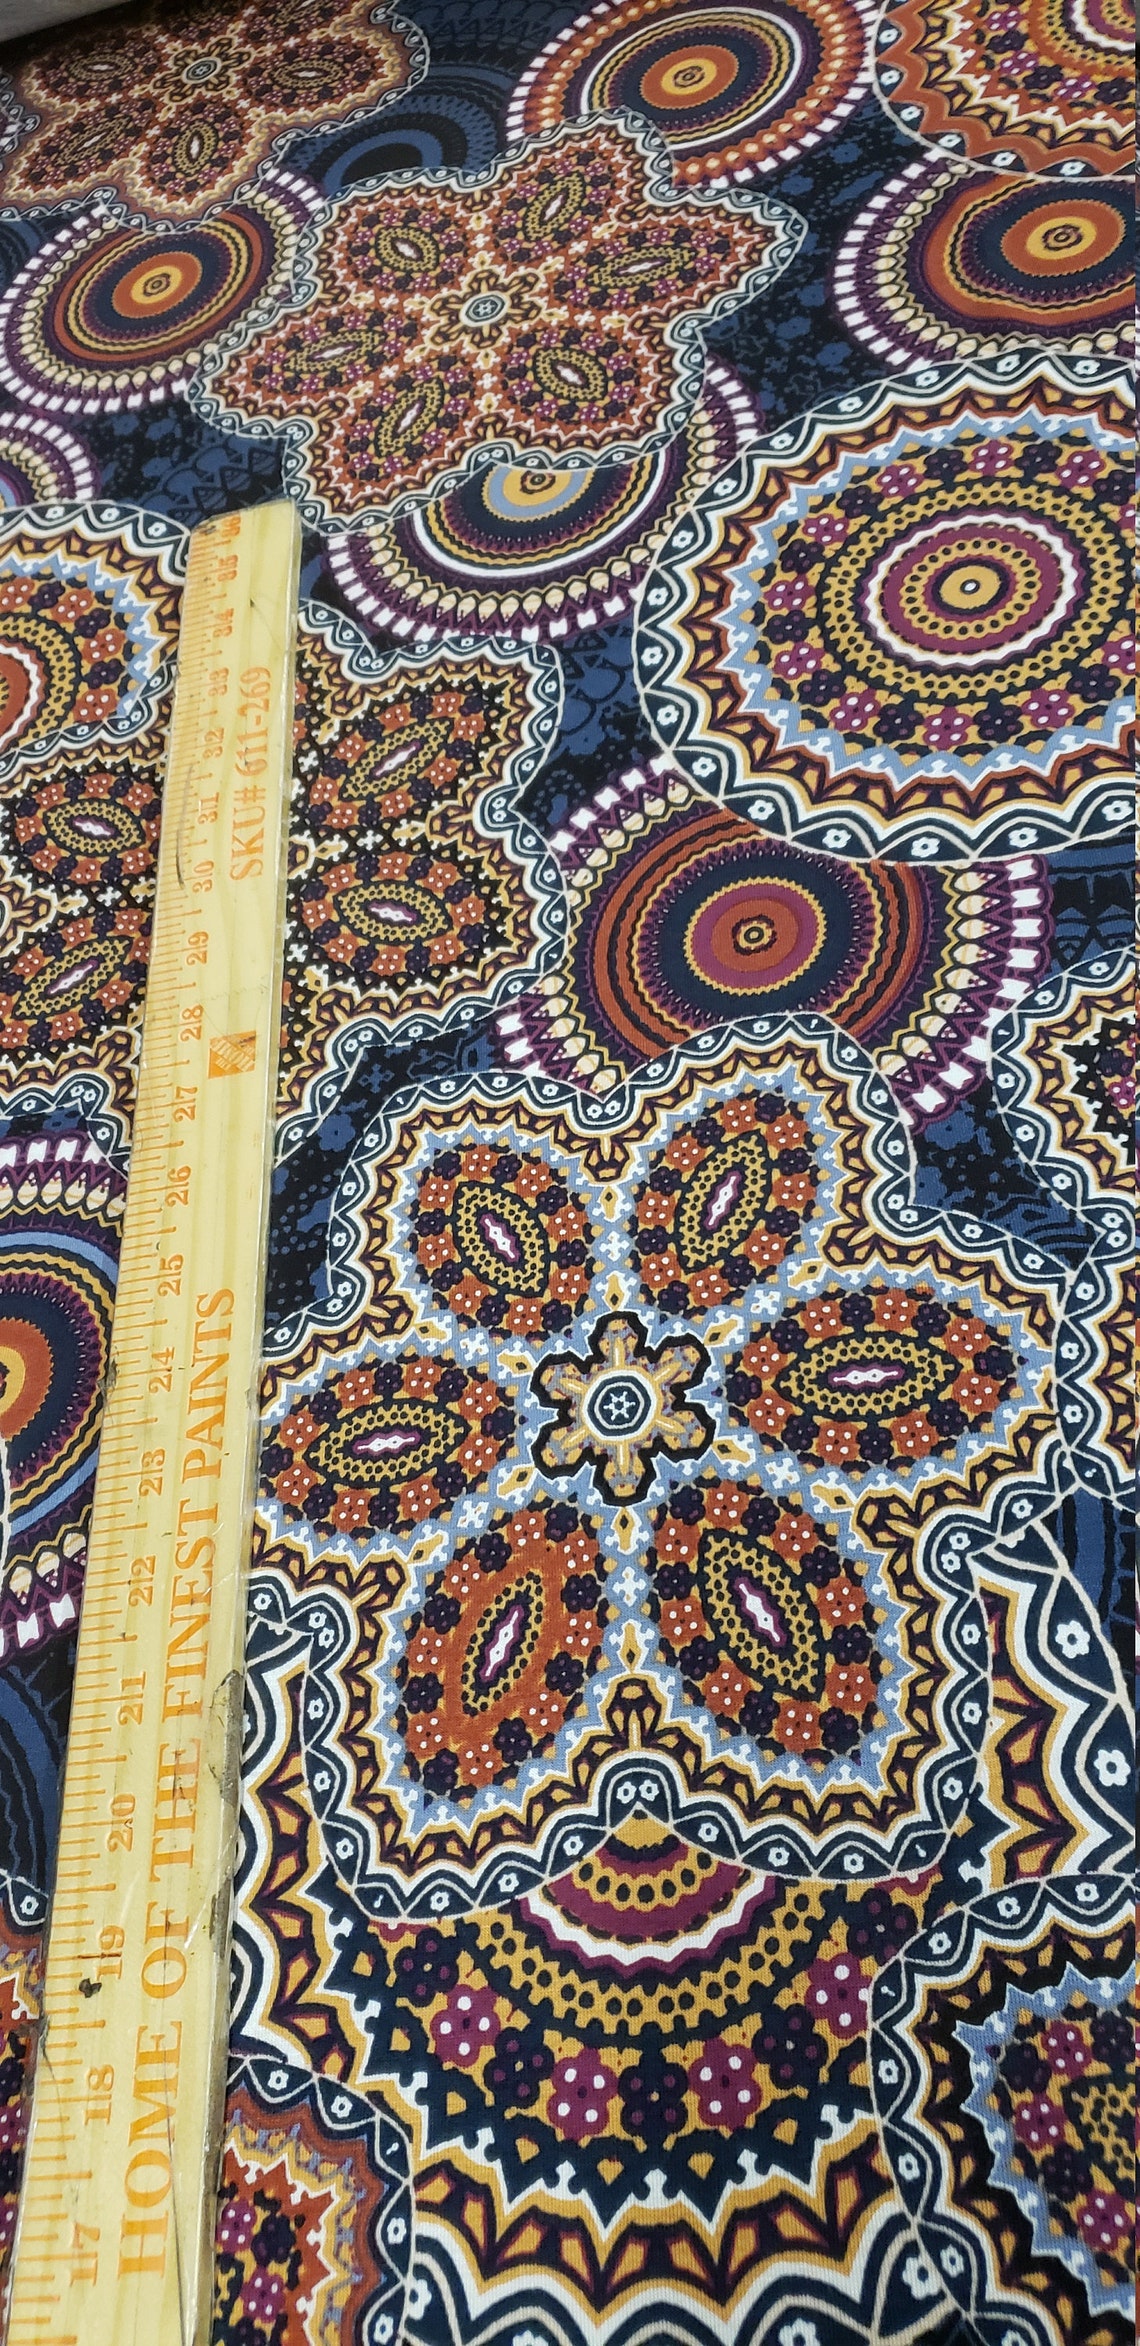 Rayon Spandex Knit Jersey Fabric Beautiful turkish Print by | Etsy